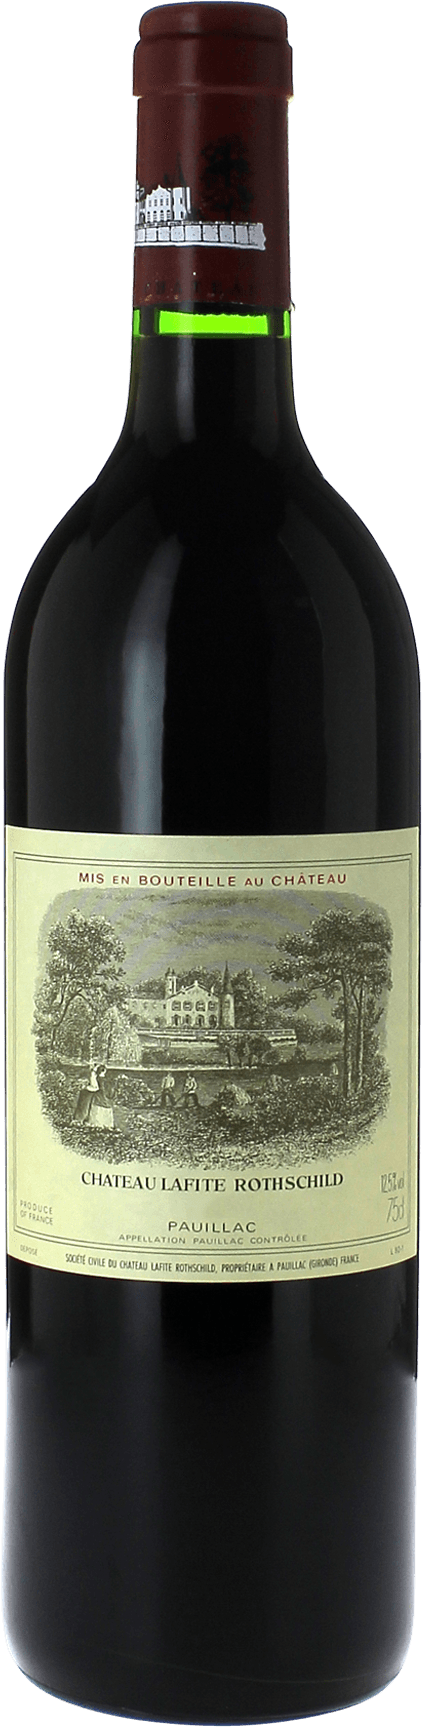 Lafite rothschild pauillac 2000 1er Grand cru class Pauillac, Bordeaux rouge